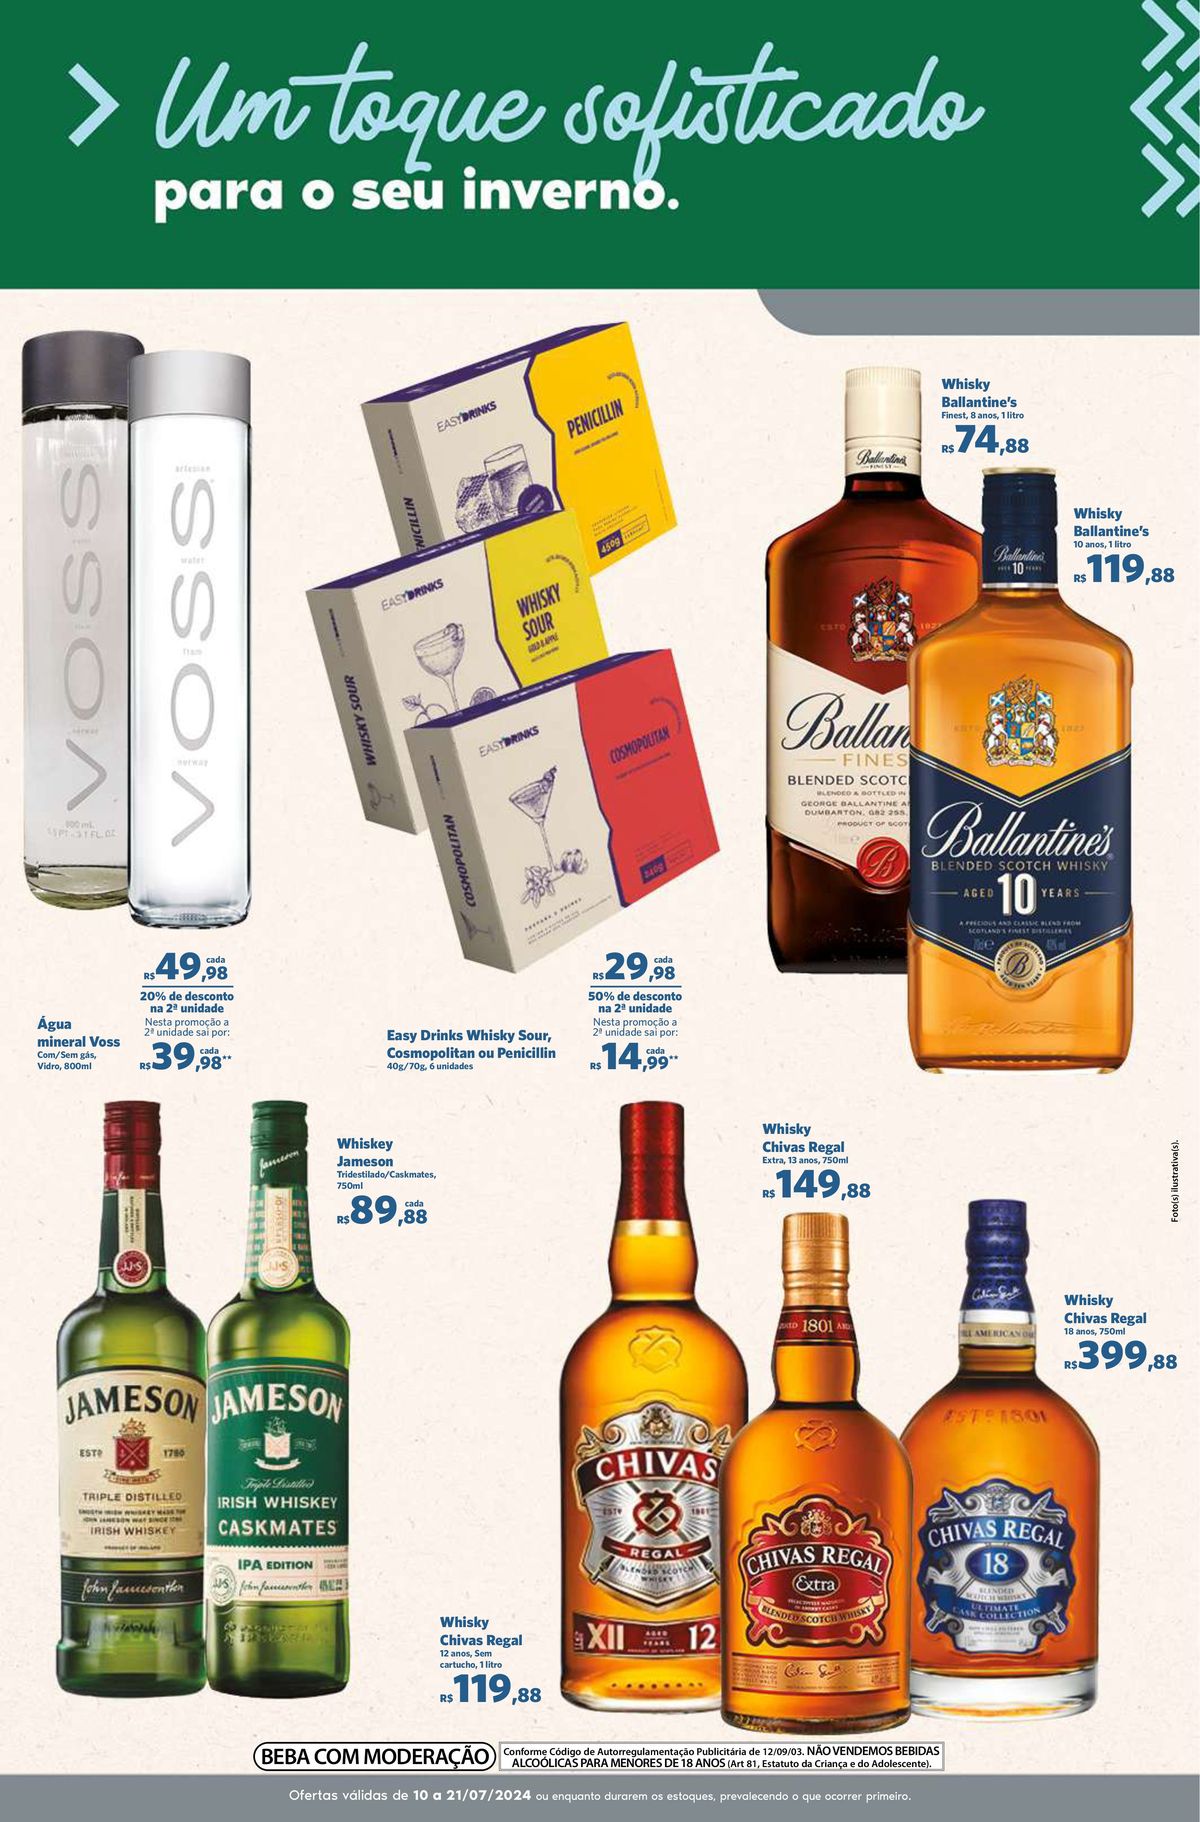 Promoção de Whisky Ballantine's, Chivas Regal e Jameson